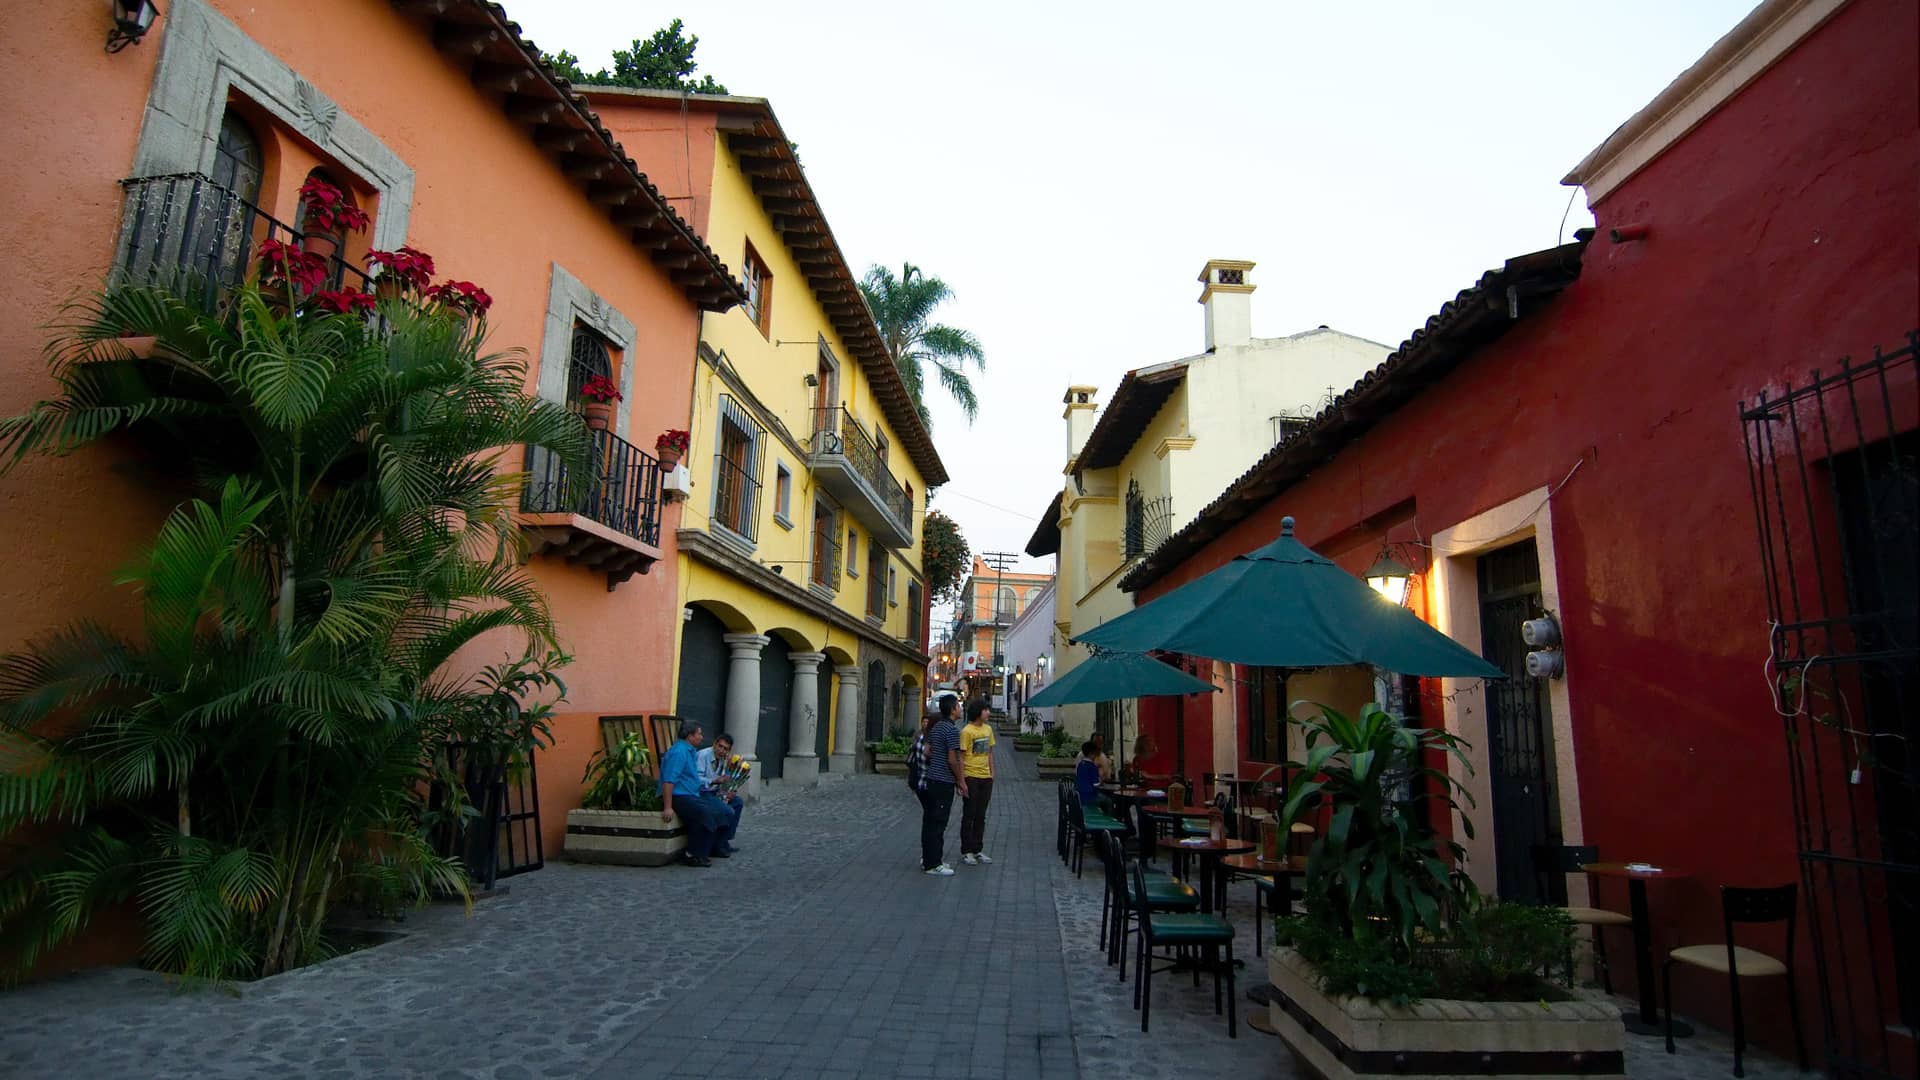 Calles de la ciudad de Cuernavaca México donde puedes encontrar sucursales de la empresa telcel